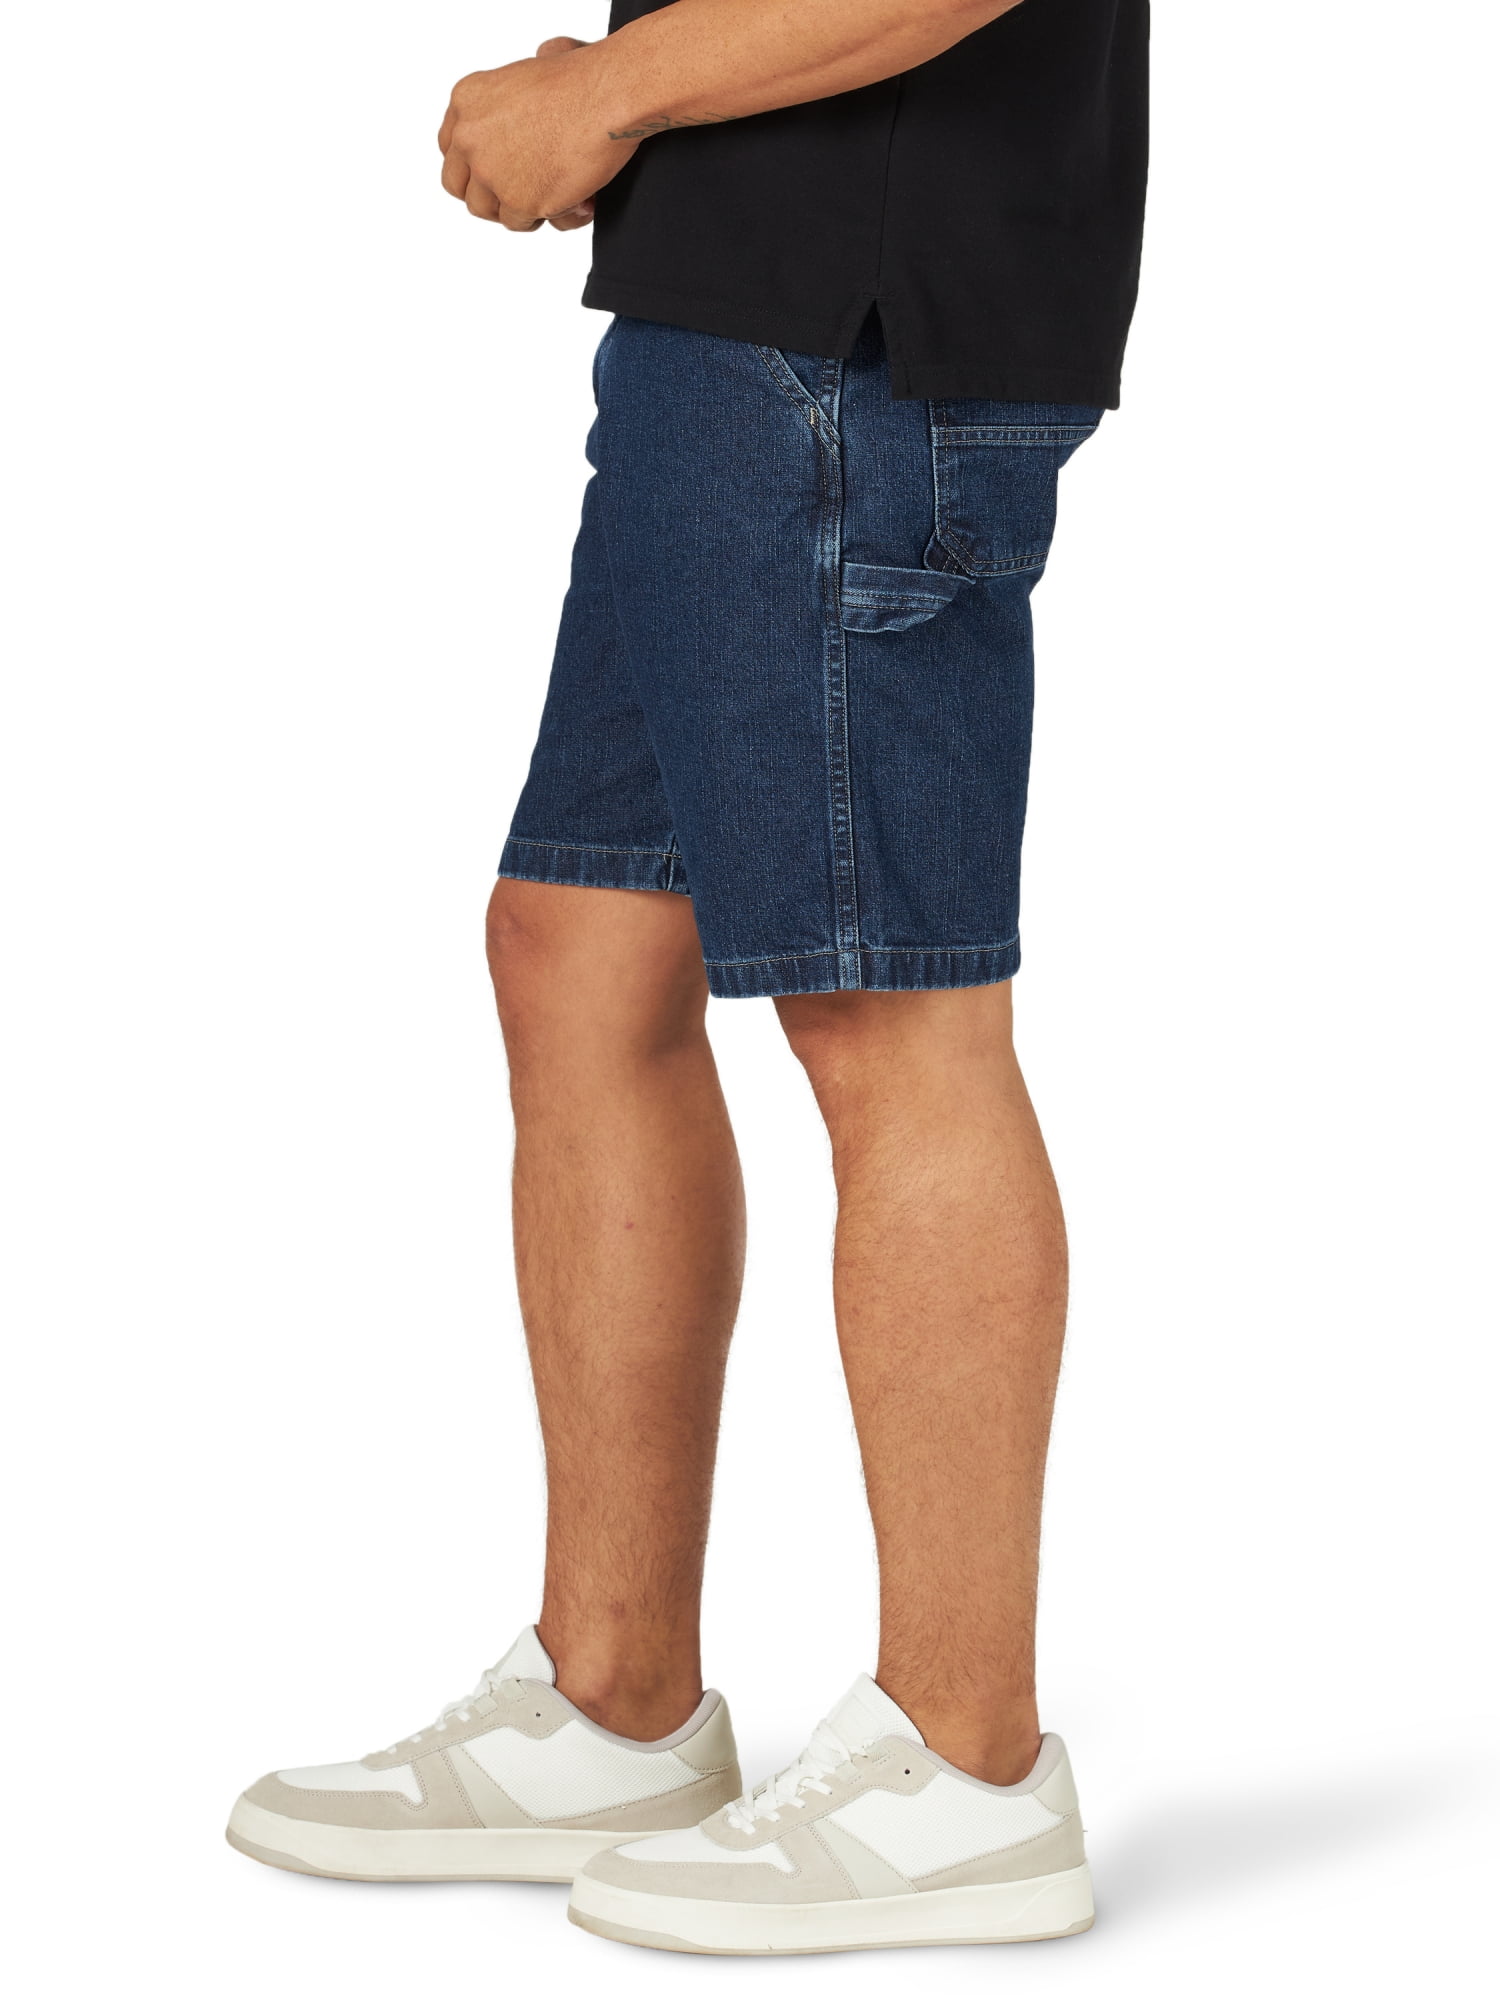 Wrangler Men's Relaxed Fit Carpenter Shorts 